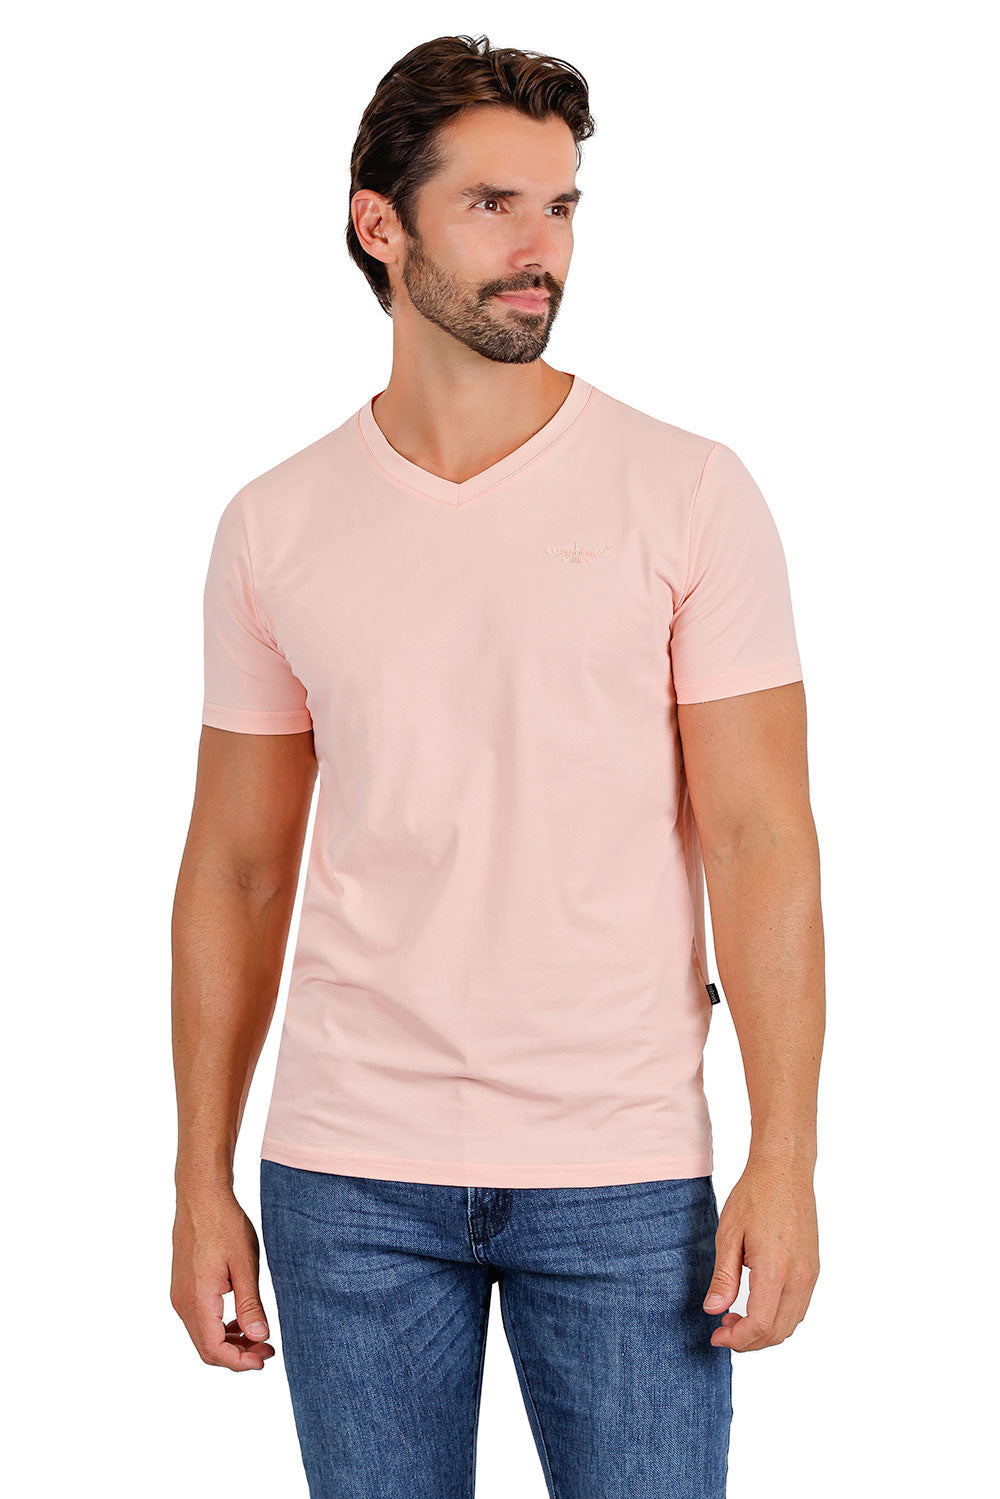 BARABAS Men's Solid Color V-neck T-shirts VTV216 Flamingo